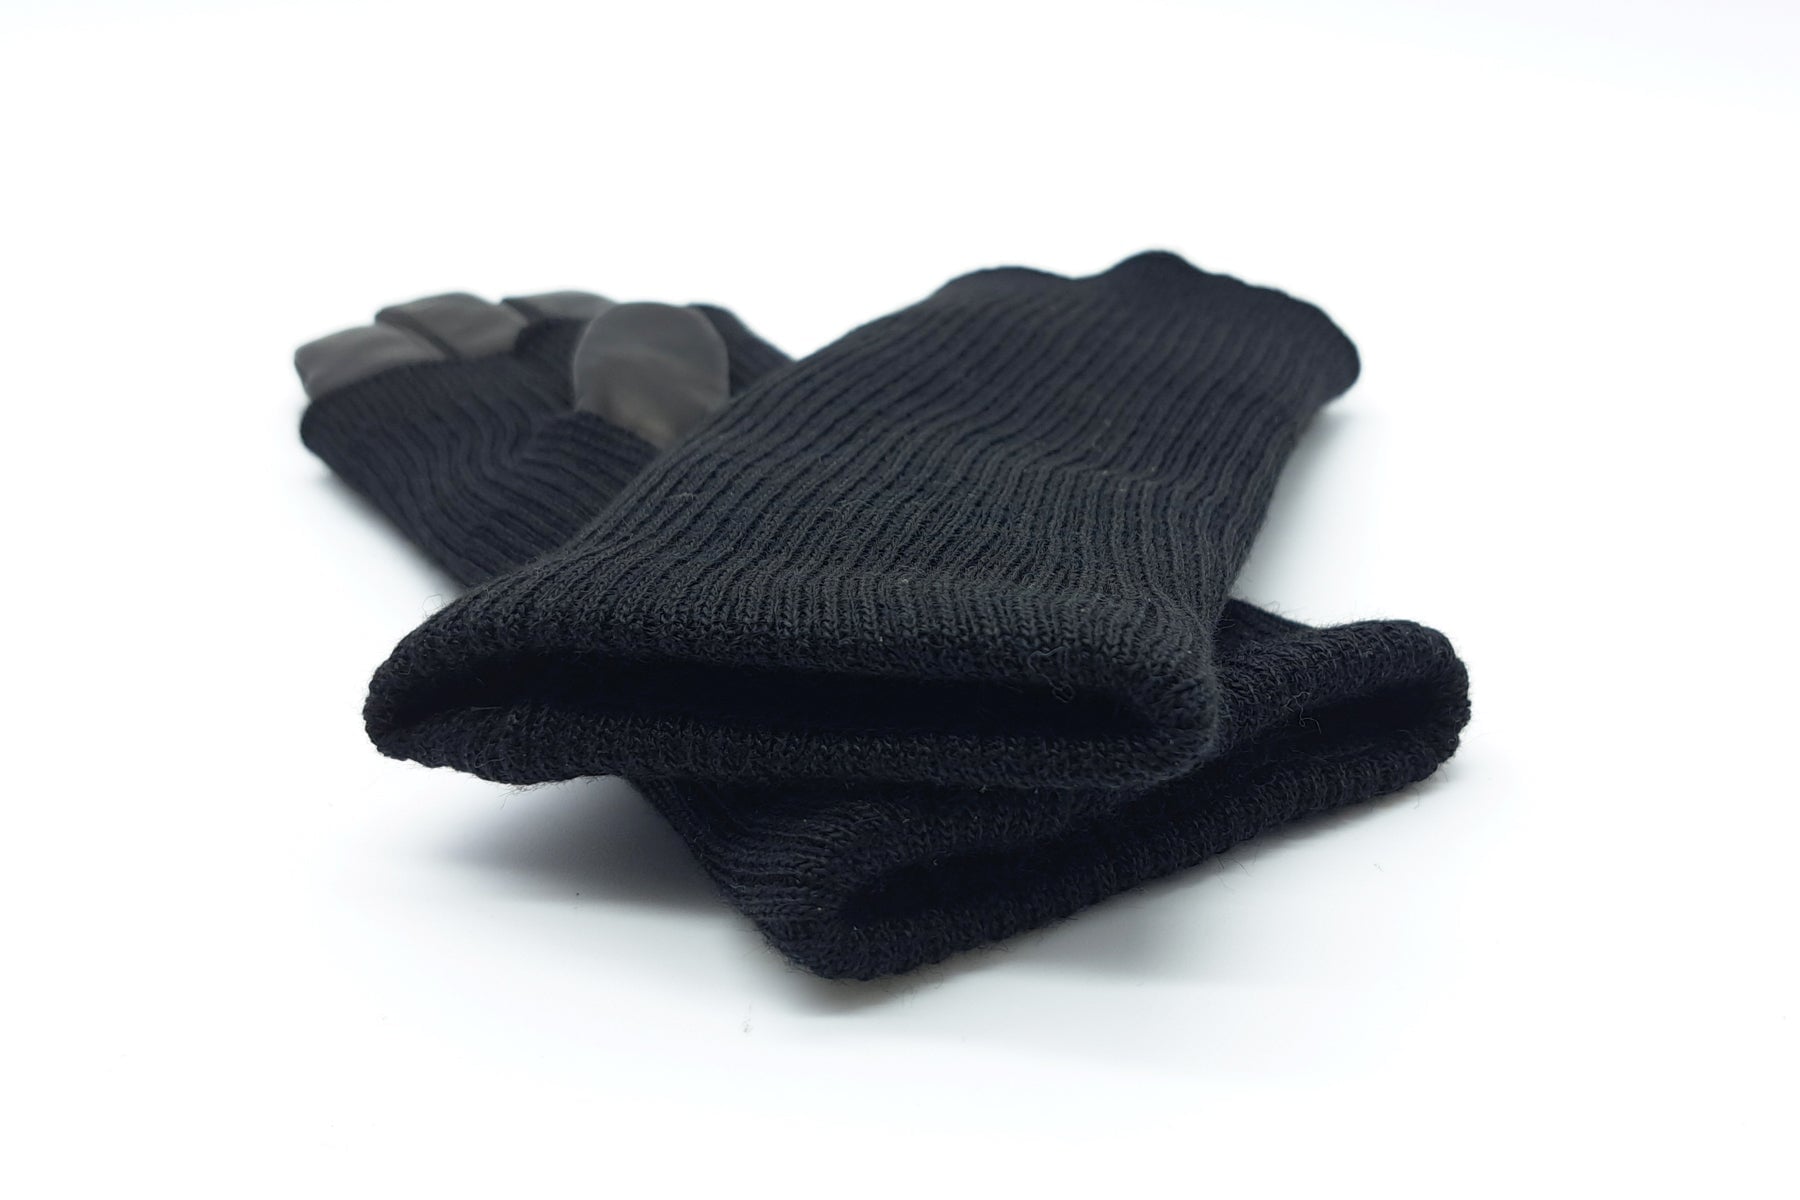 Damen Handschuhe aus Leder in Schwarz - Innenfutter Kaschmir - Langschaft Strick Damen Handschuhe Caridei 